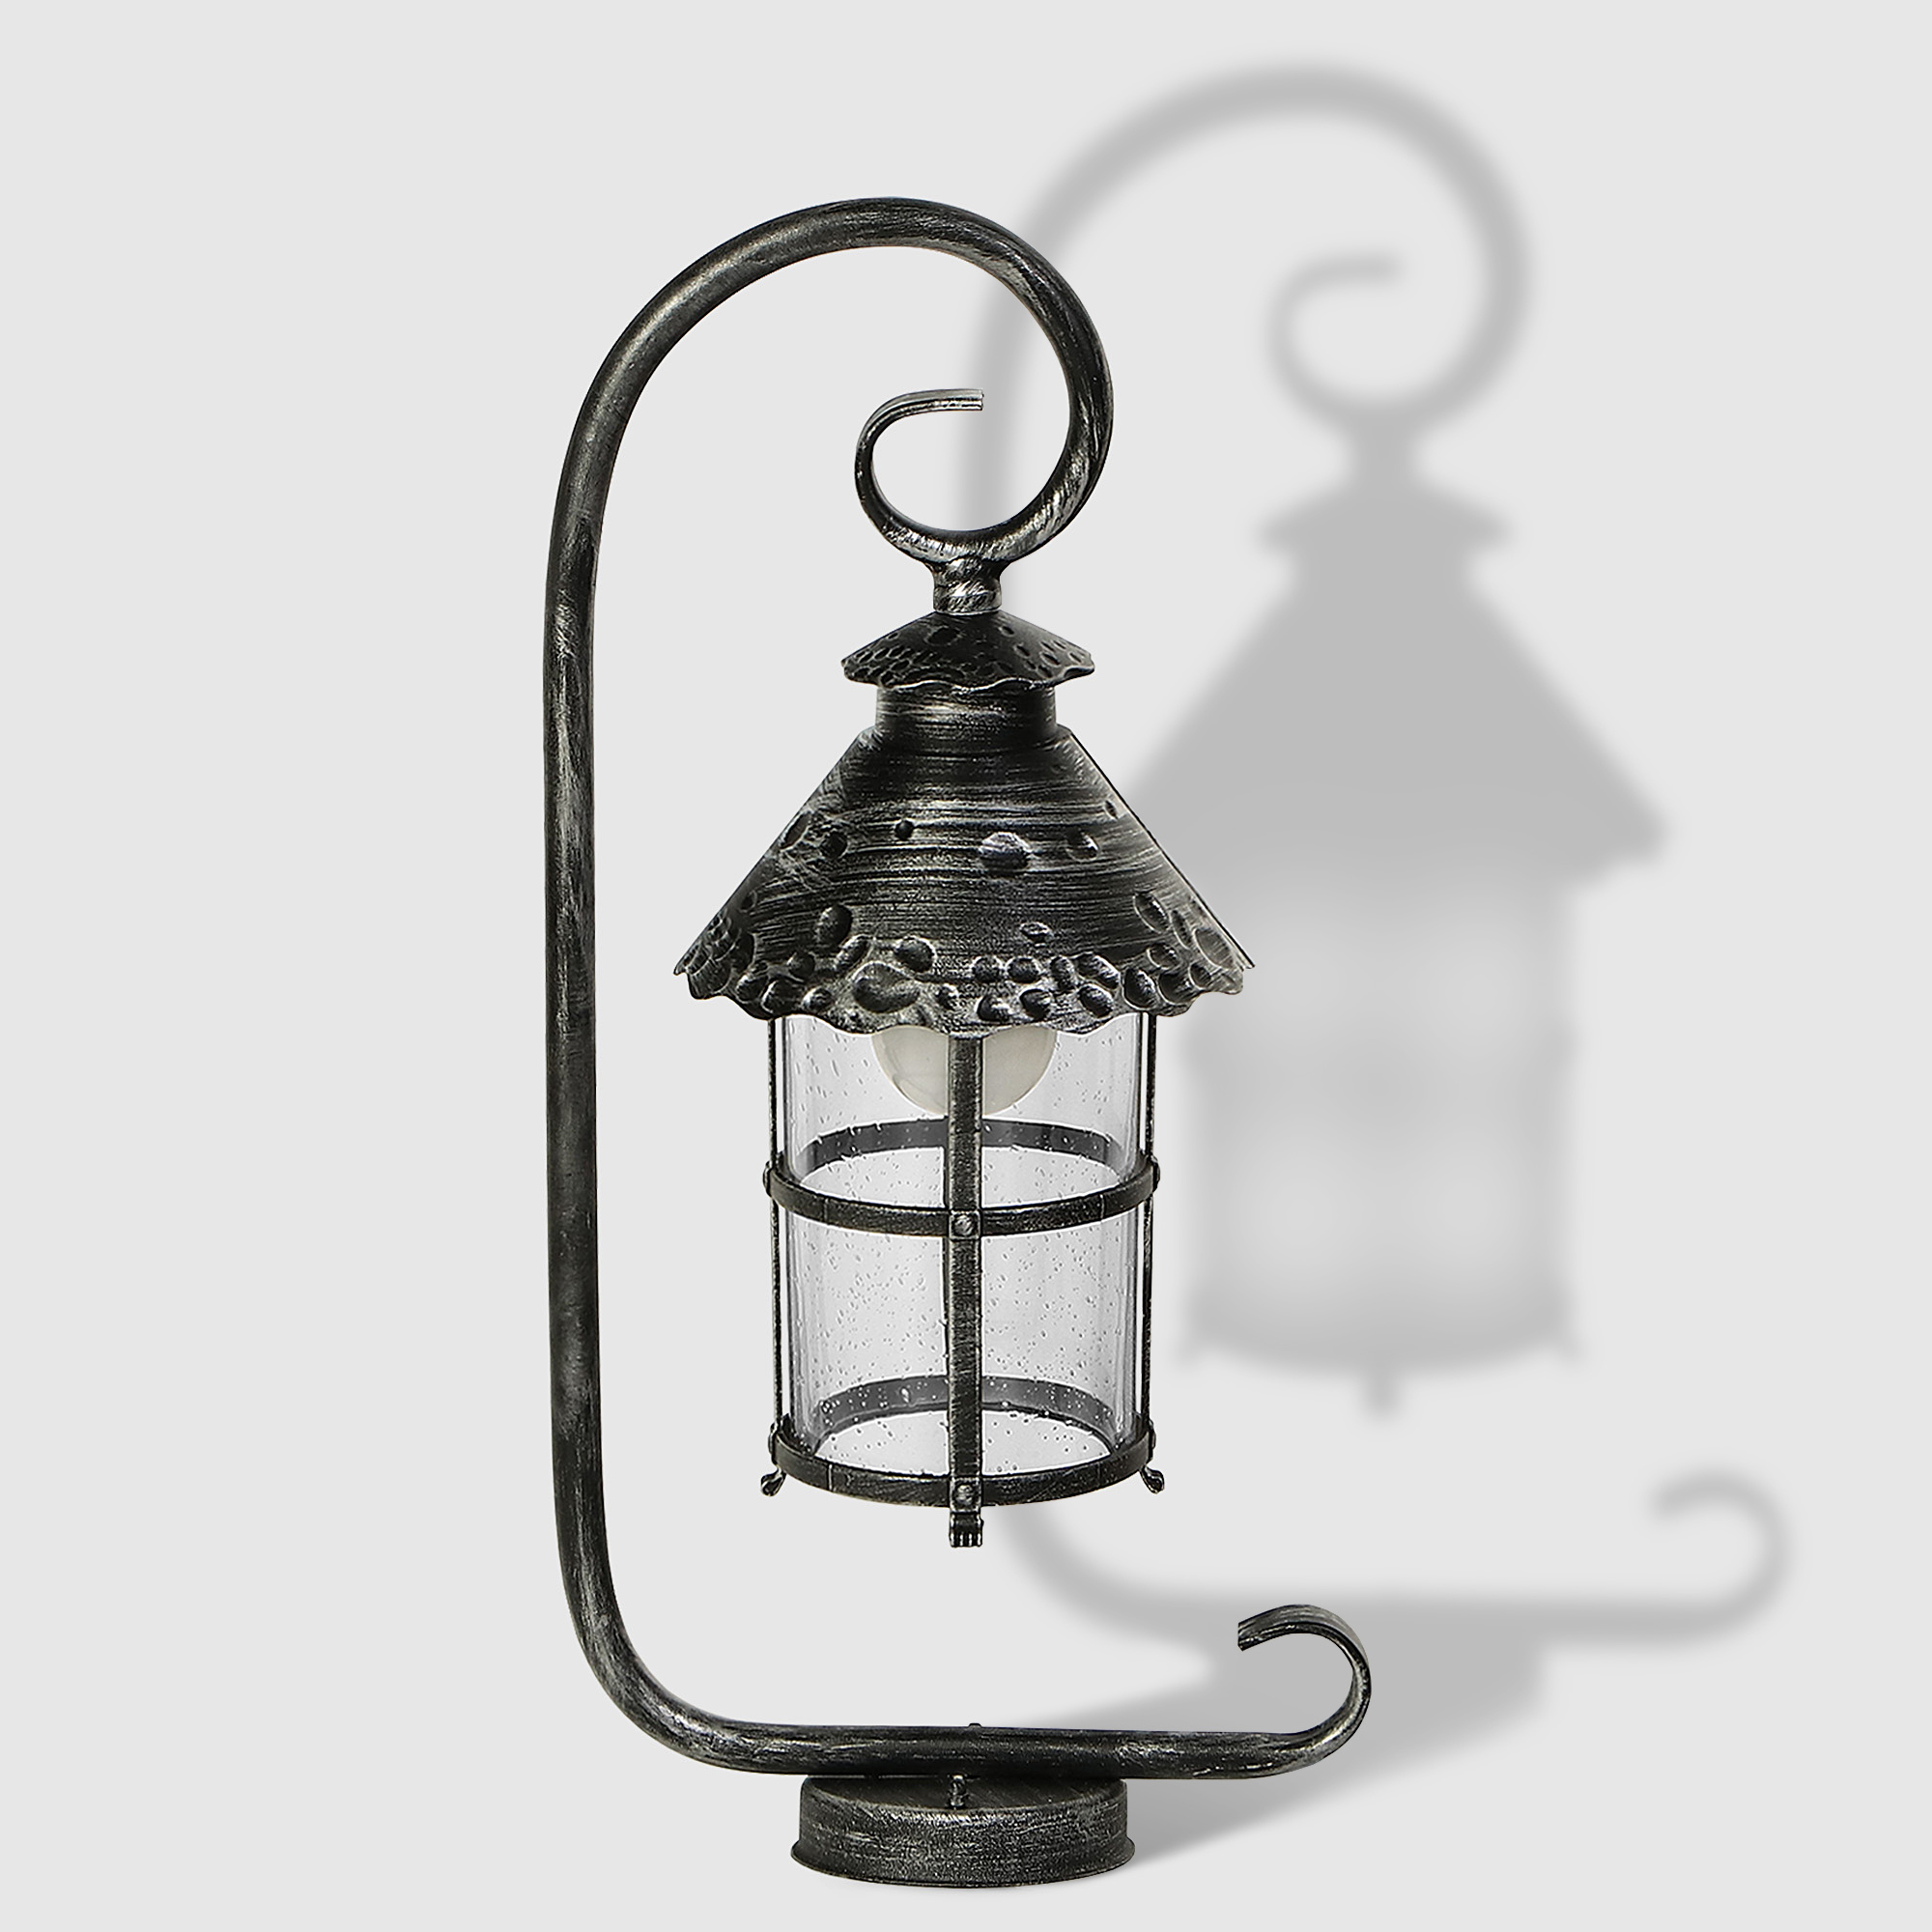 Светильник садовый Amber Lamp 8732B напольный IP23 E27 100Вт, чёрное серебро цена и фото